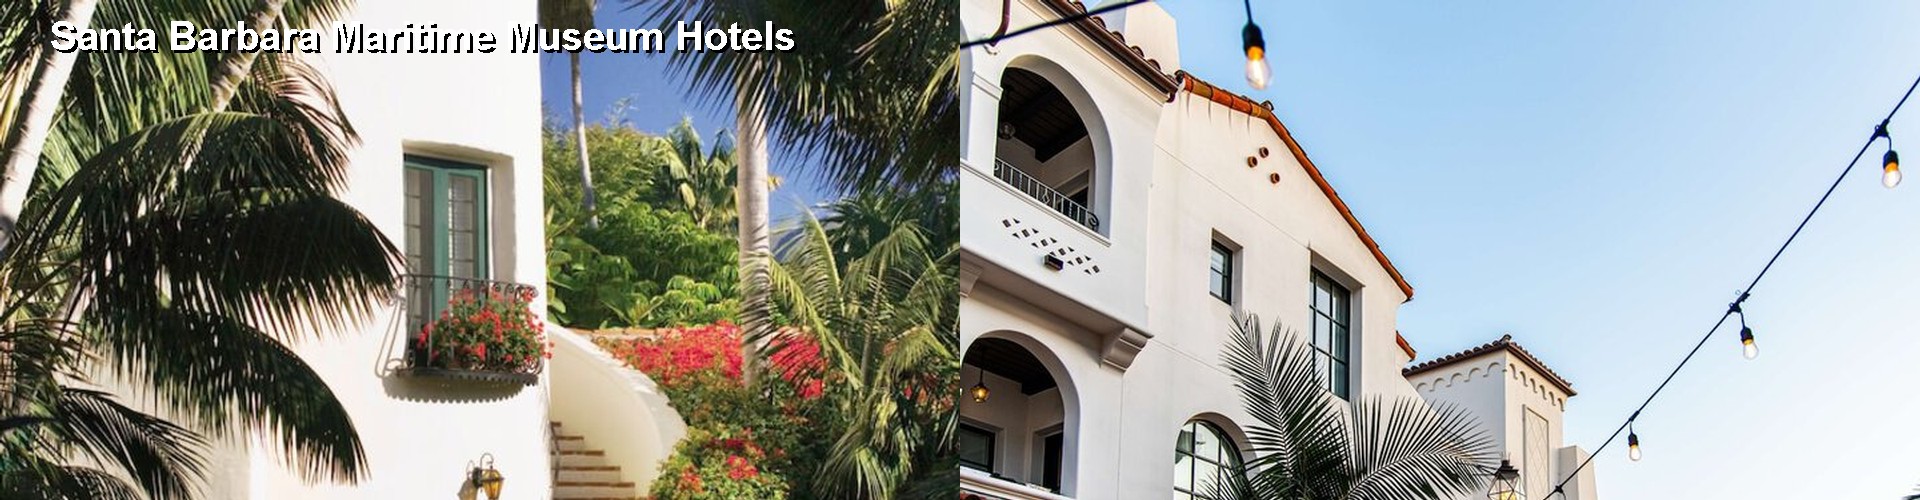 5 Best Hotels near Santa Barbara Maritime Museum